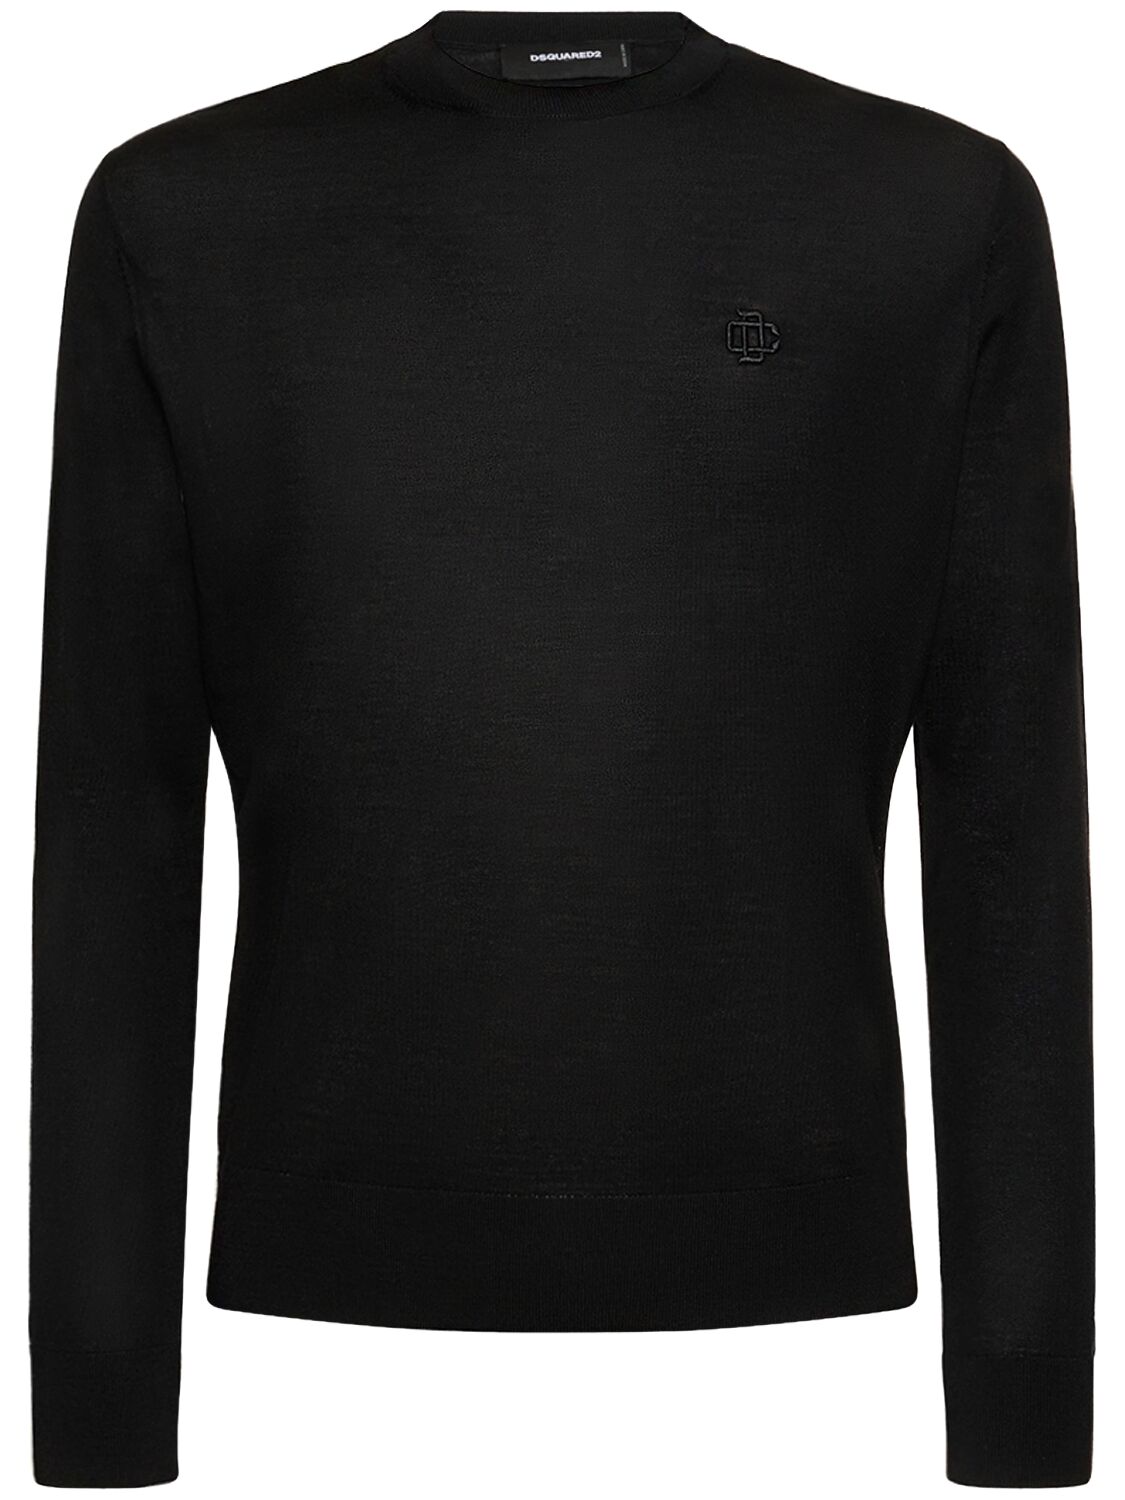 Virgin Wool Sweater W/logo – MEN > CLOTHING > KNITWEAR